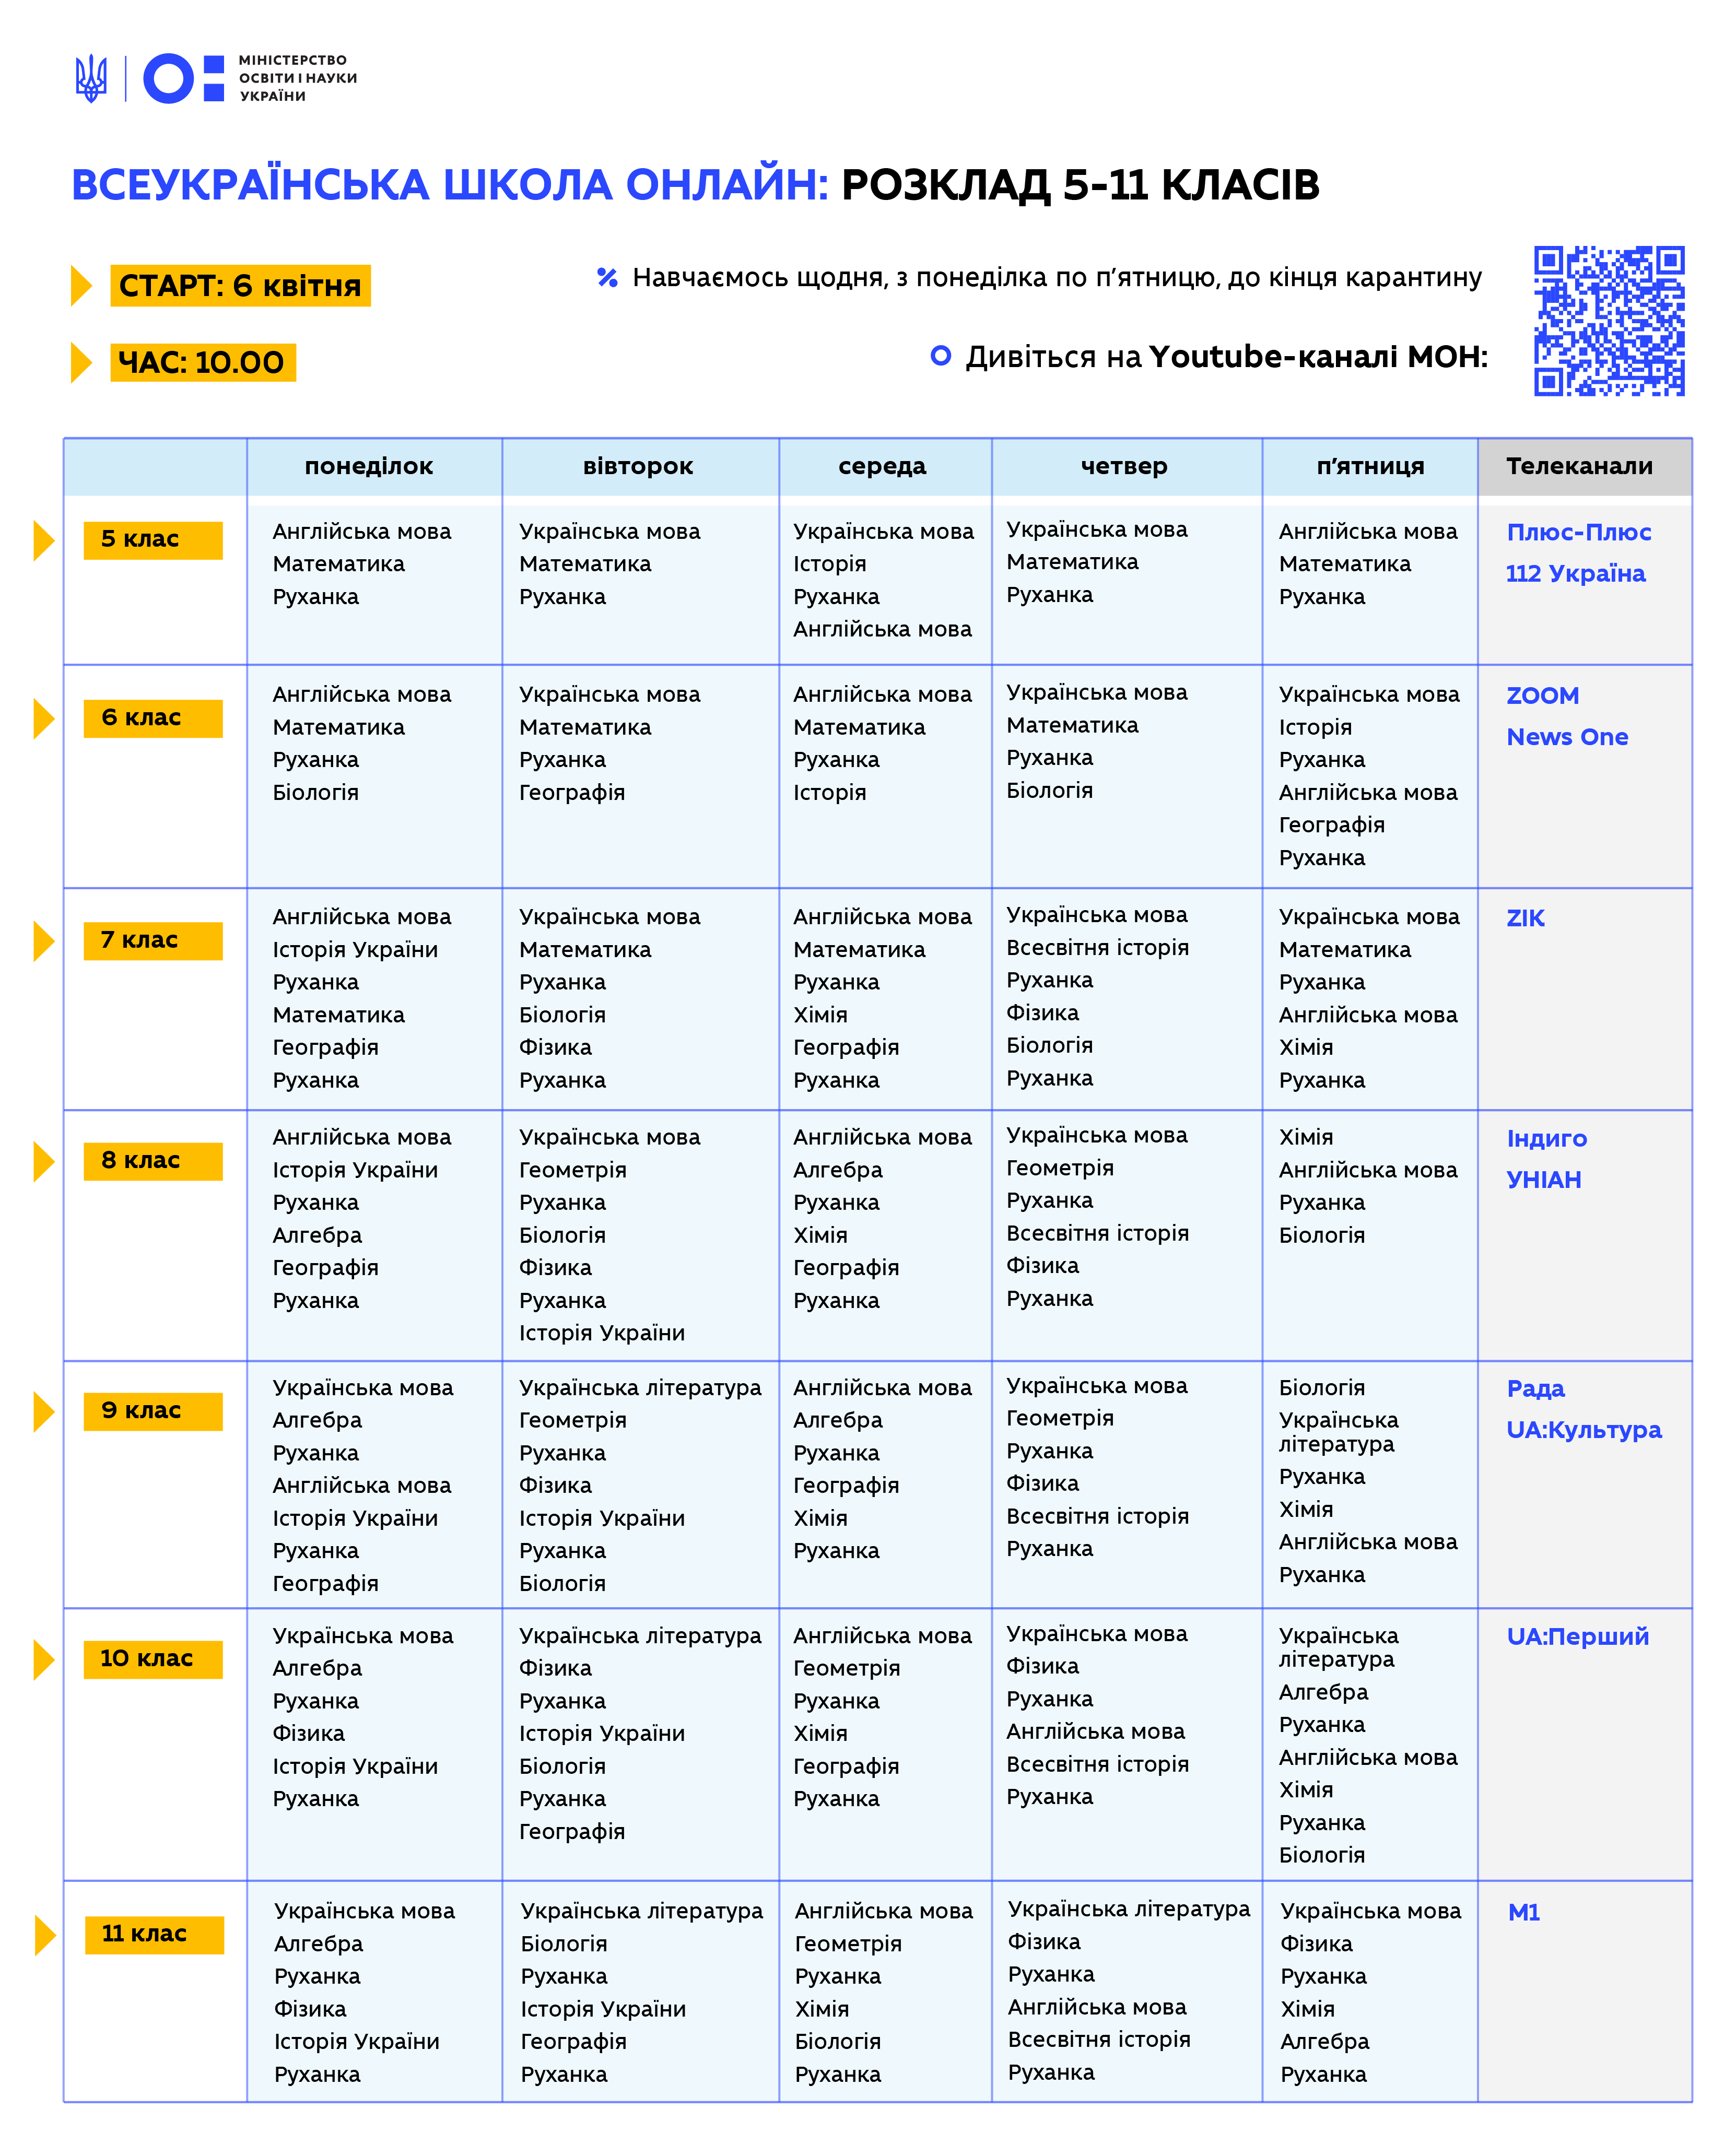 МОН опубликовало расписание уроков онлайн школы